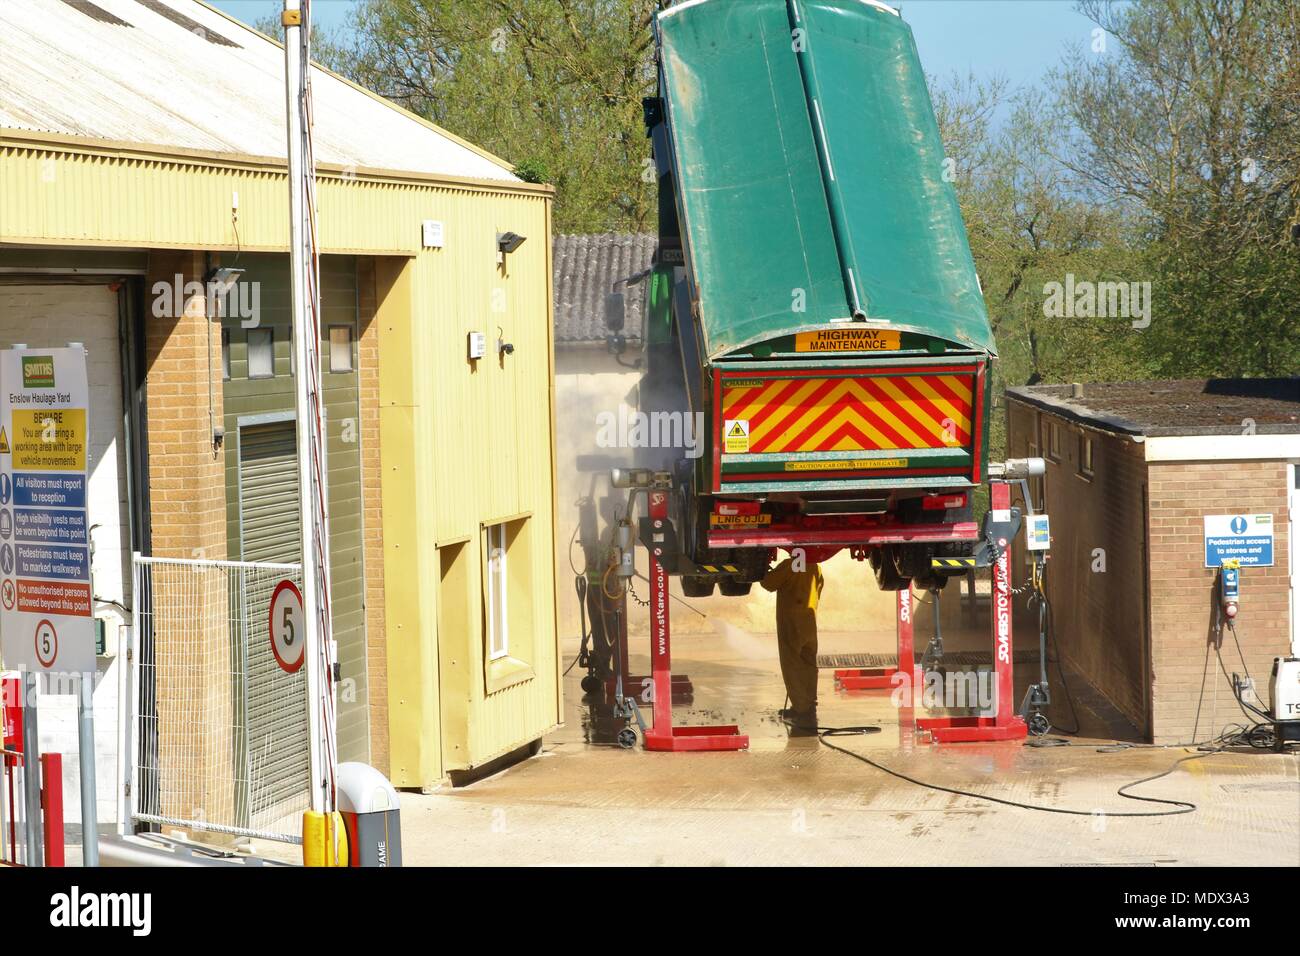 Ansicht einer Smiths Bletchingdon lkw-Rampe mit der Rückseite des Lkw auf  Achse mit Mann unter Reinigung gewaschen wird angehoben Stockfotografie -  Alamy